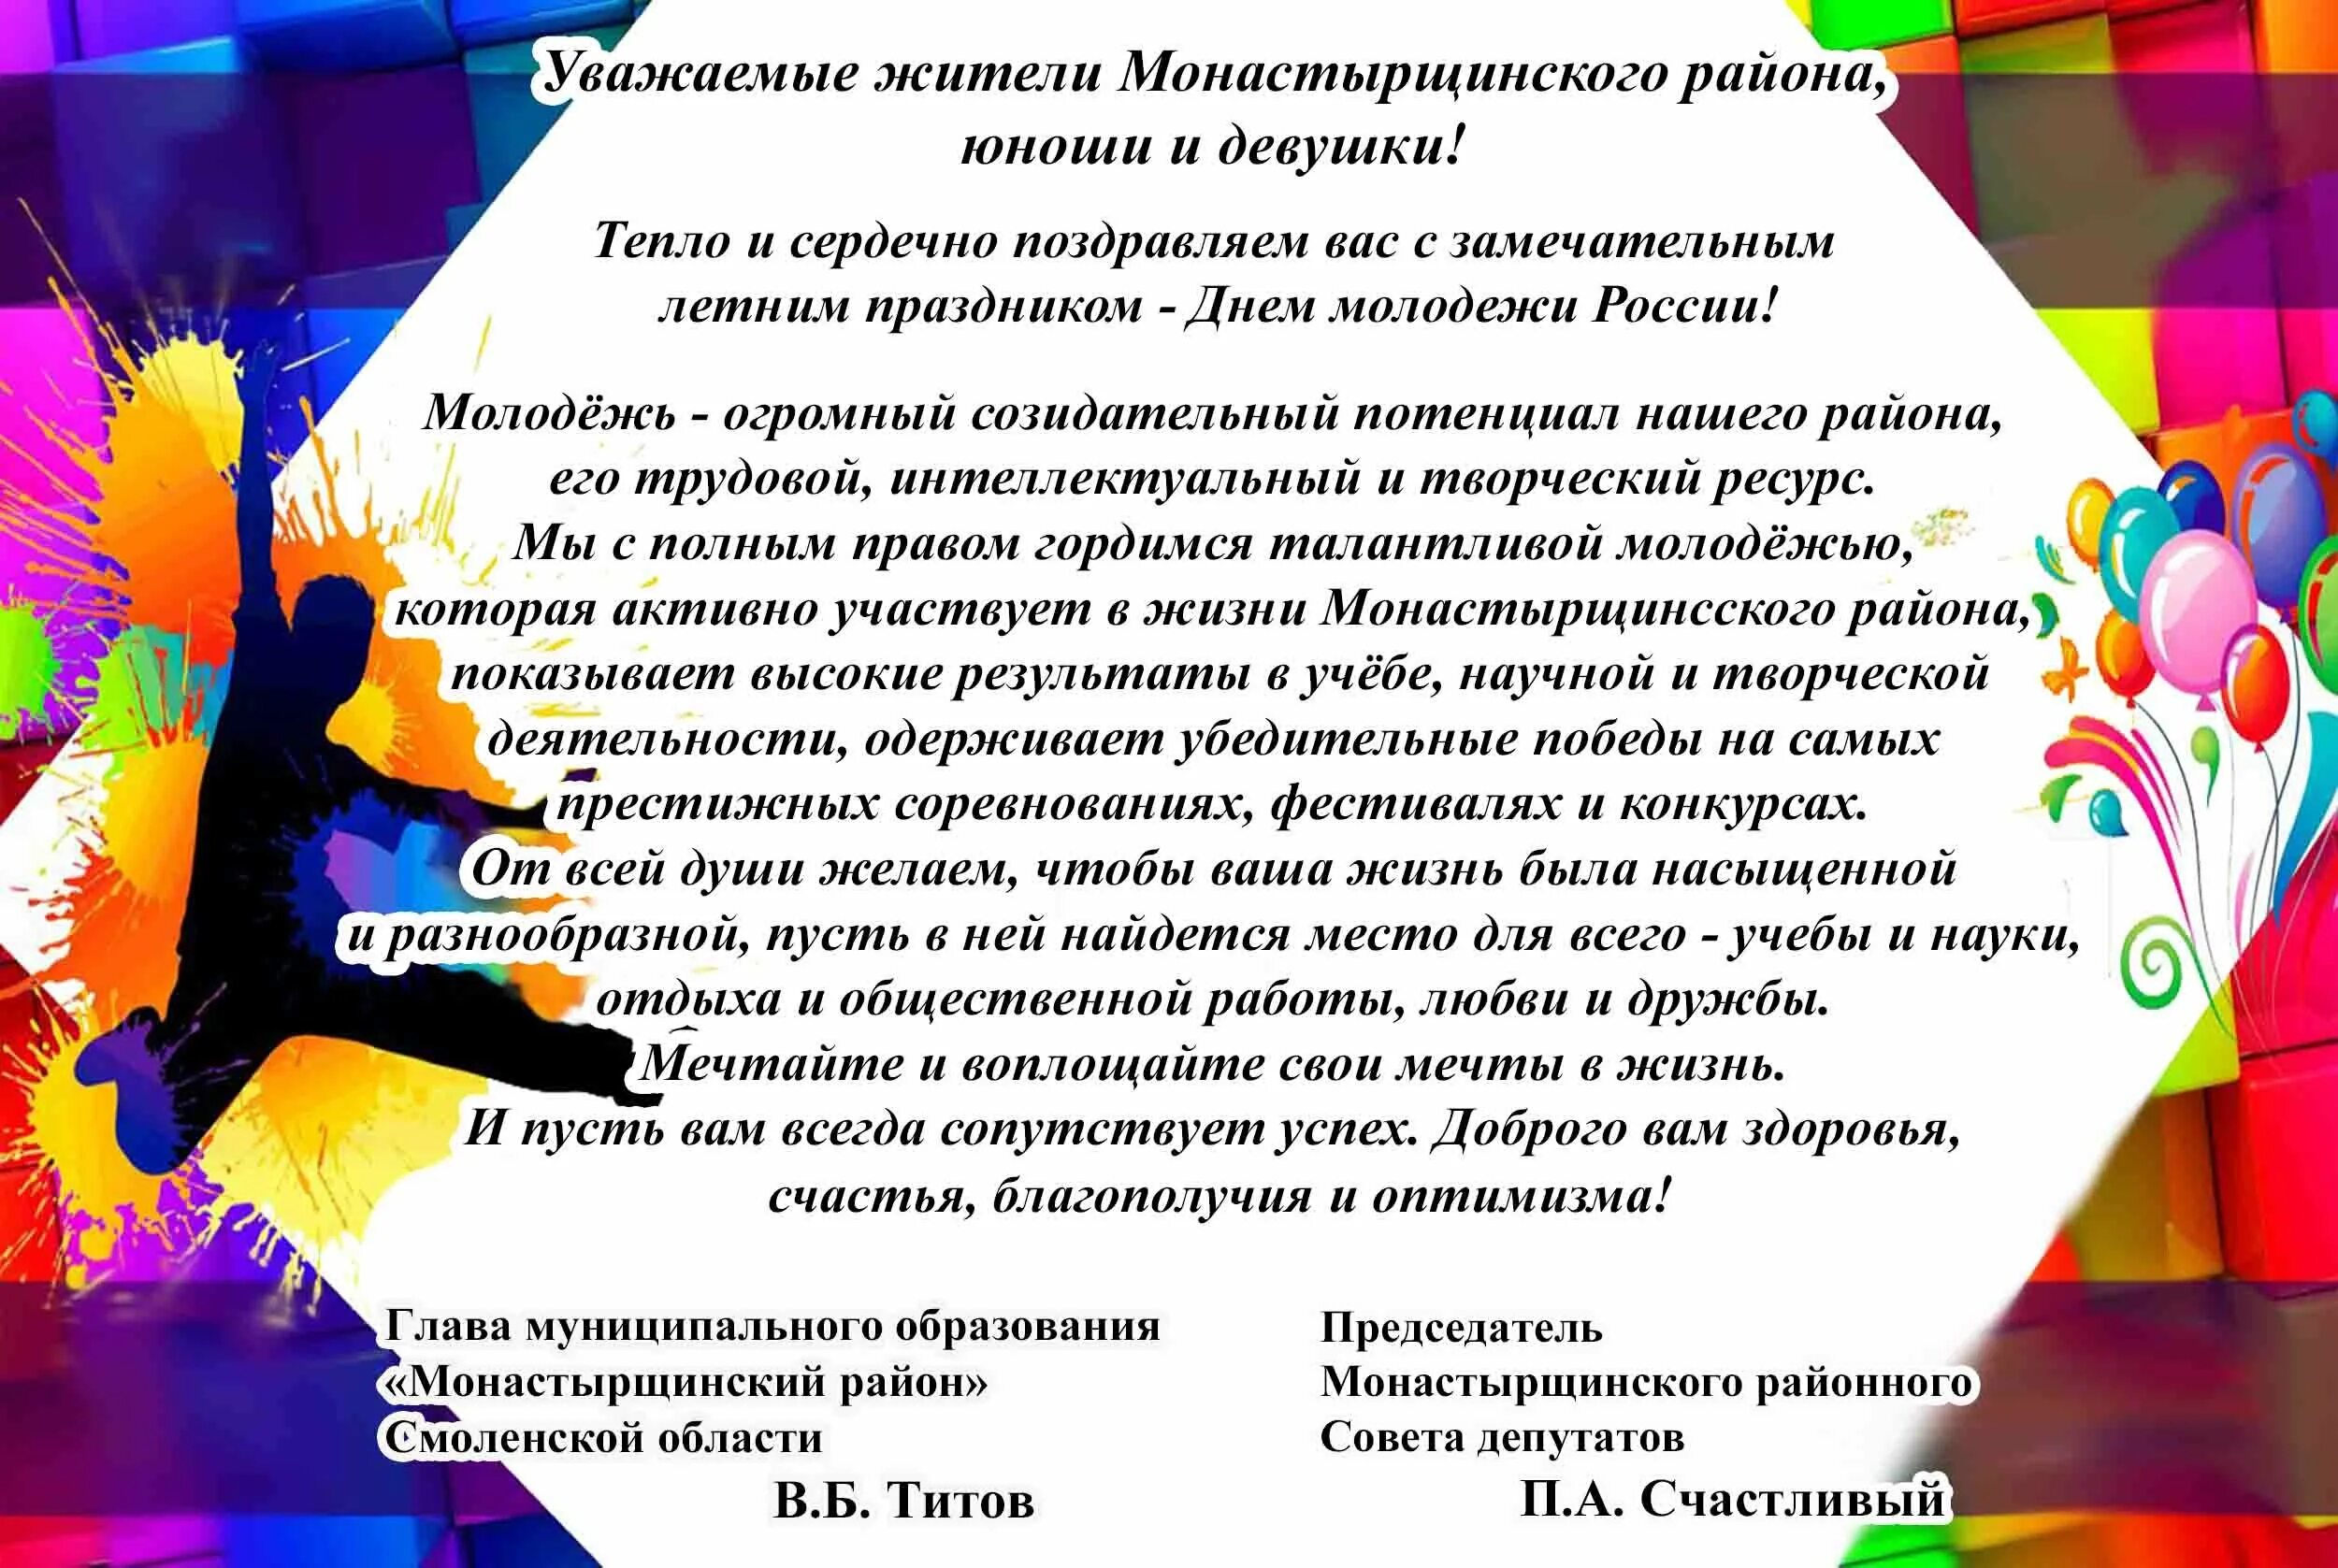 Слова молодому поколению. Поздравление с днем молодежи официальное. С днем молодежи России поздравление официальное. Поздравление с днем молодежи в прозе официальное. Поздравление главы с днем молодежи.